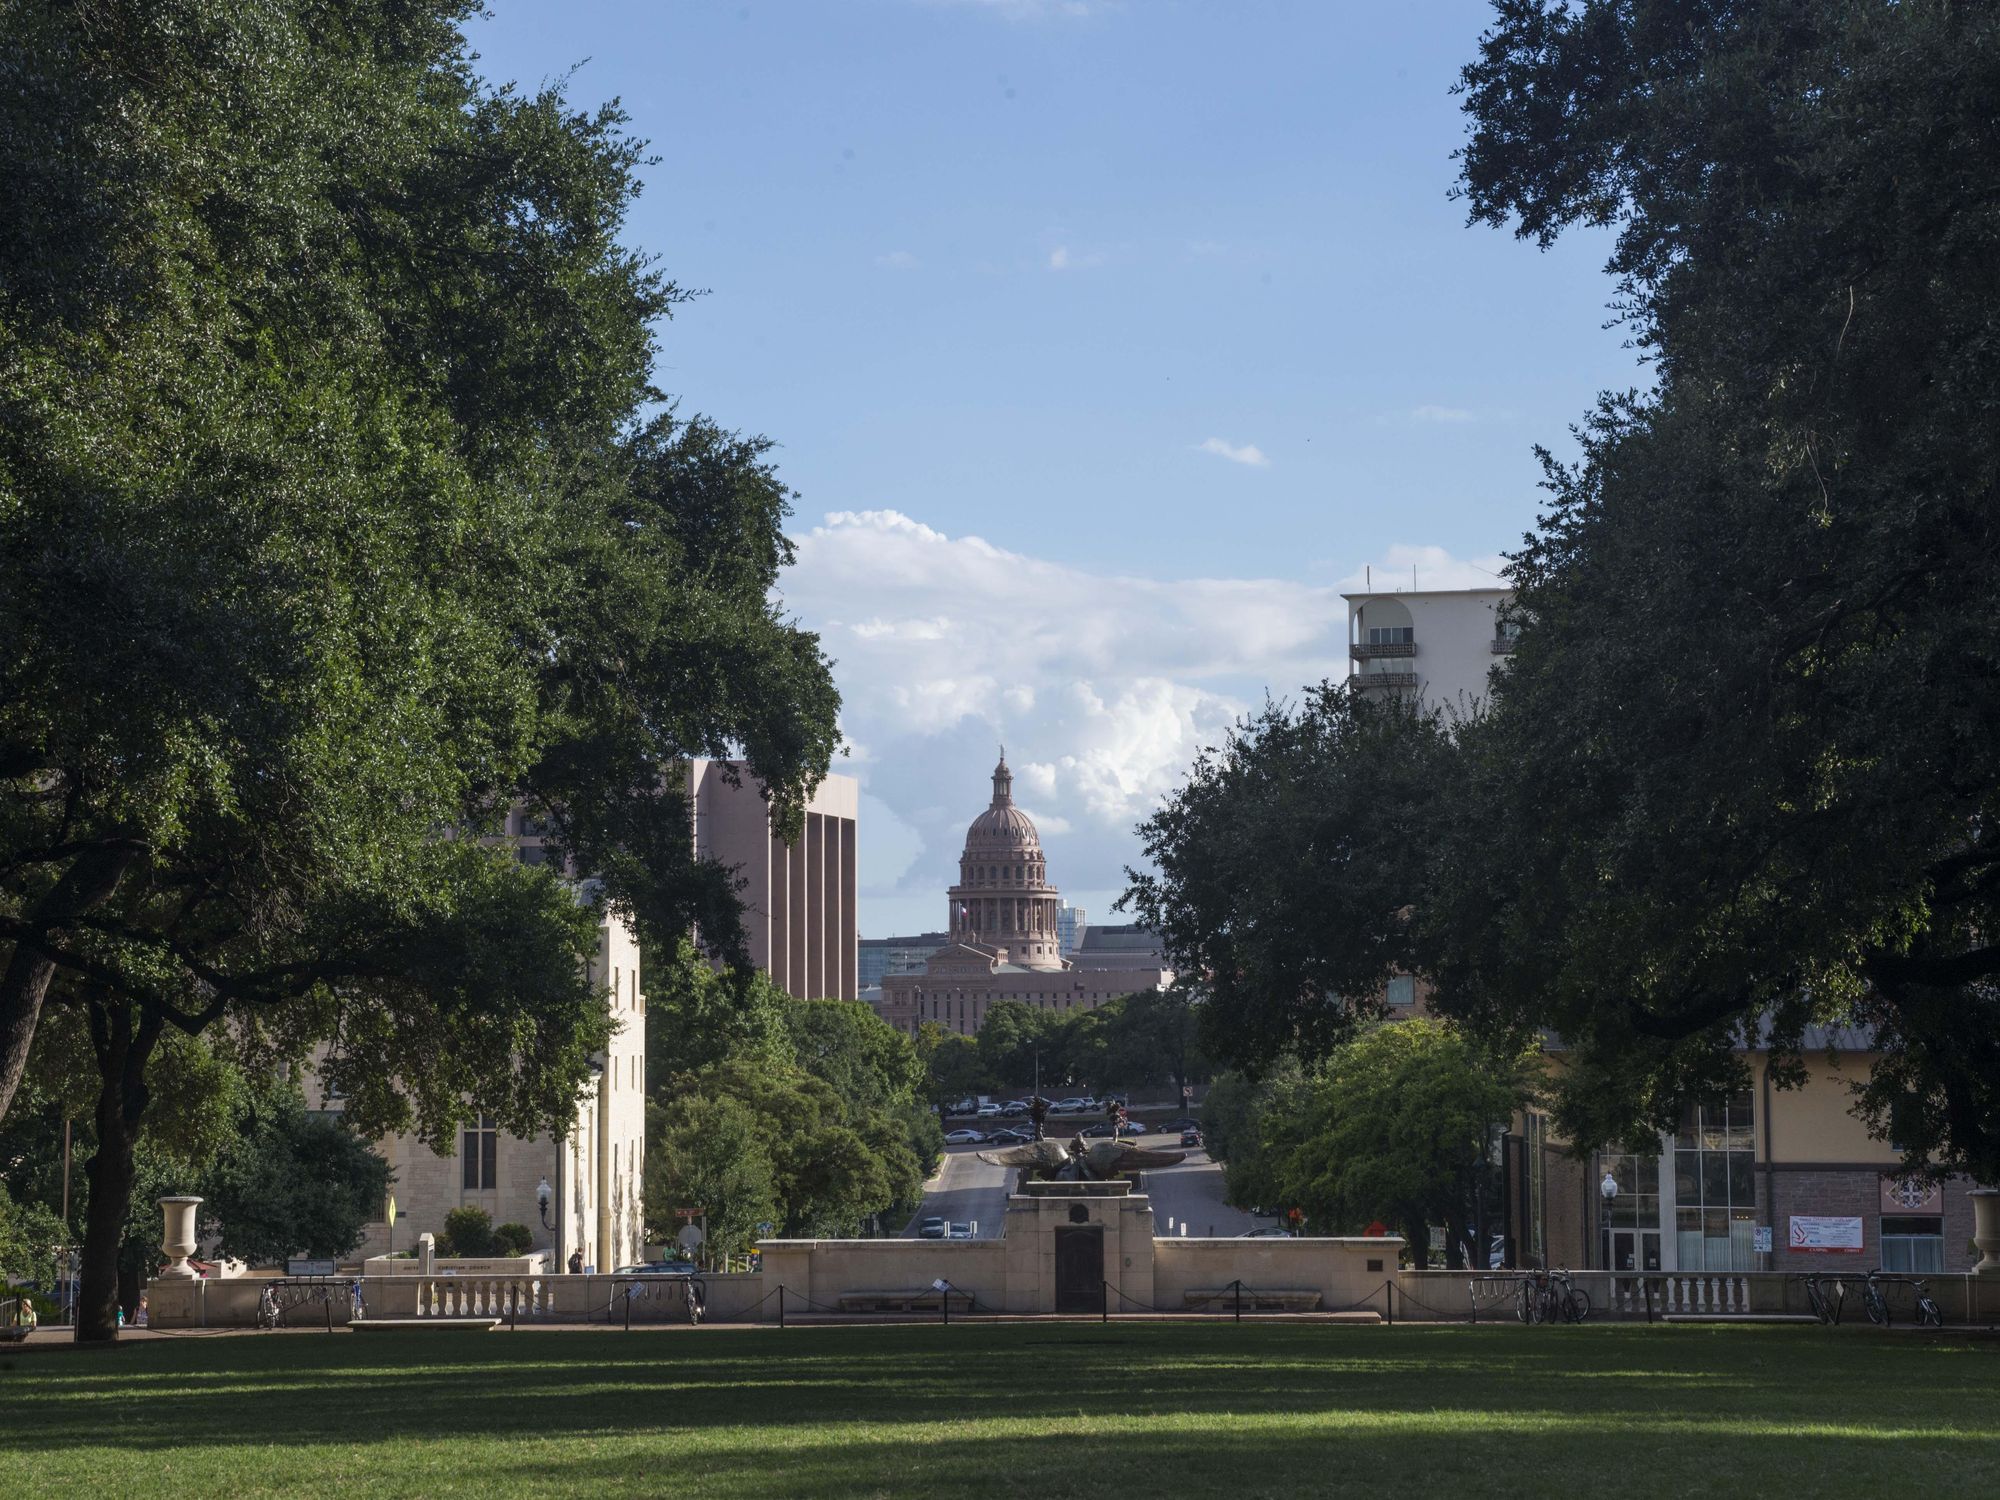 The UT Austin campus facing the Texas Capitol